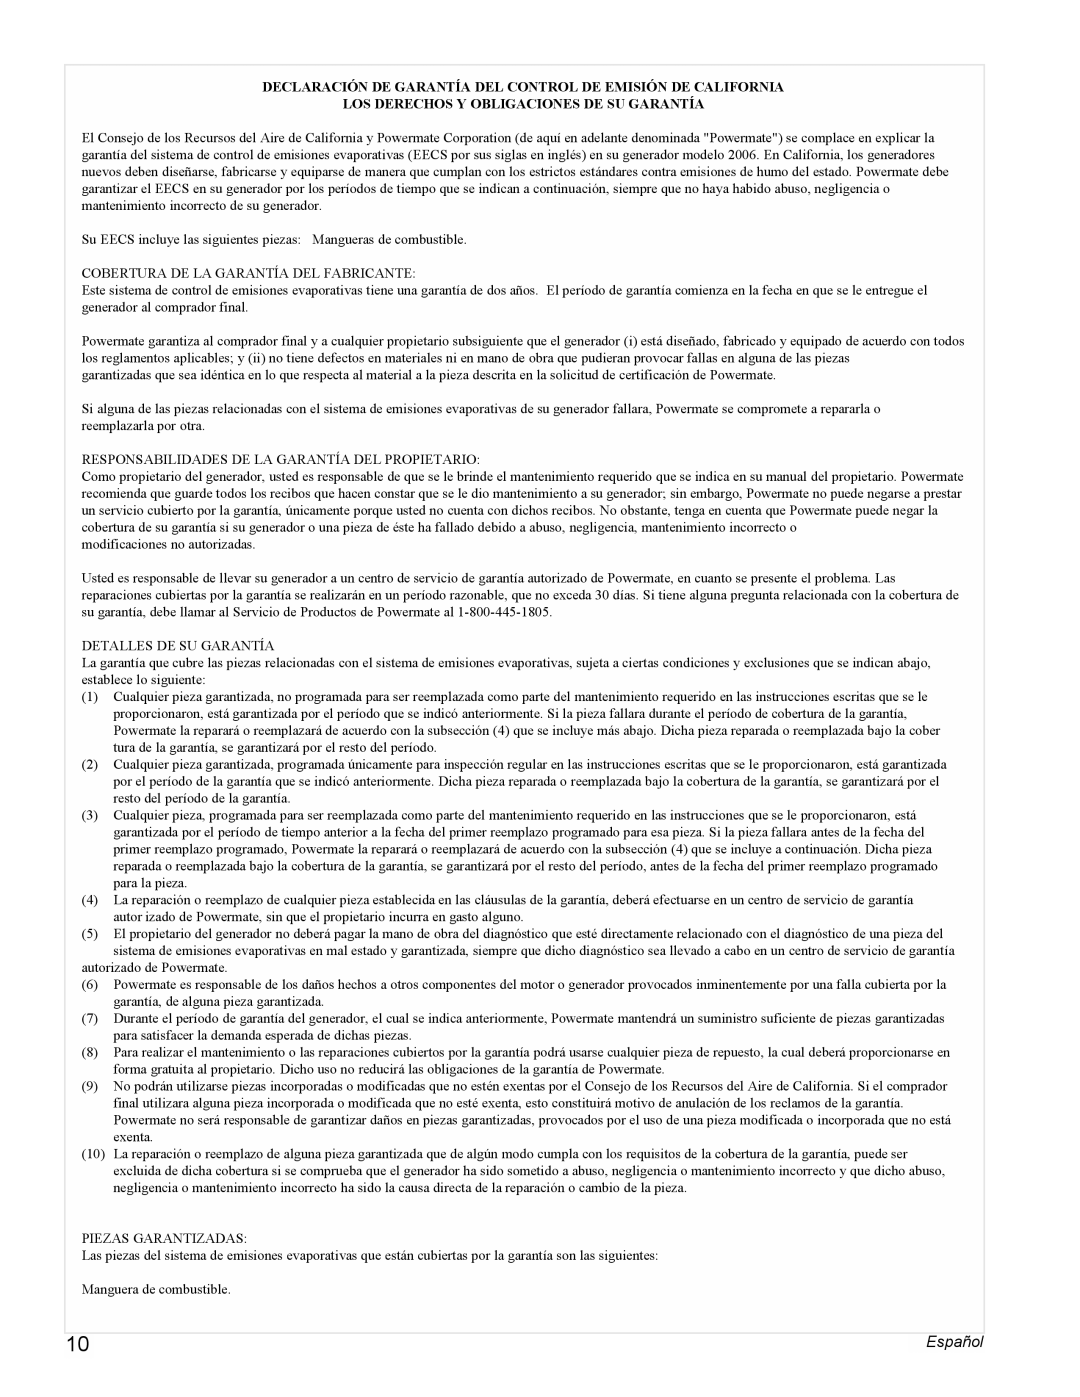 Powermate PMC505622 manual Los Derechos Y Obligaciones De Su Garantía, Español 